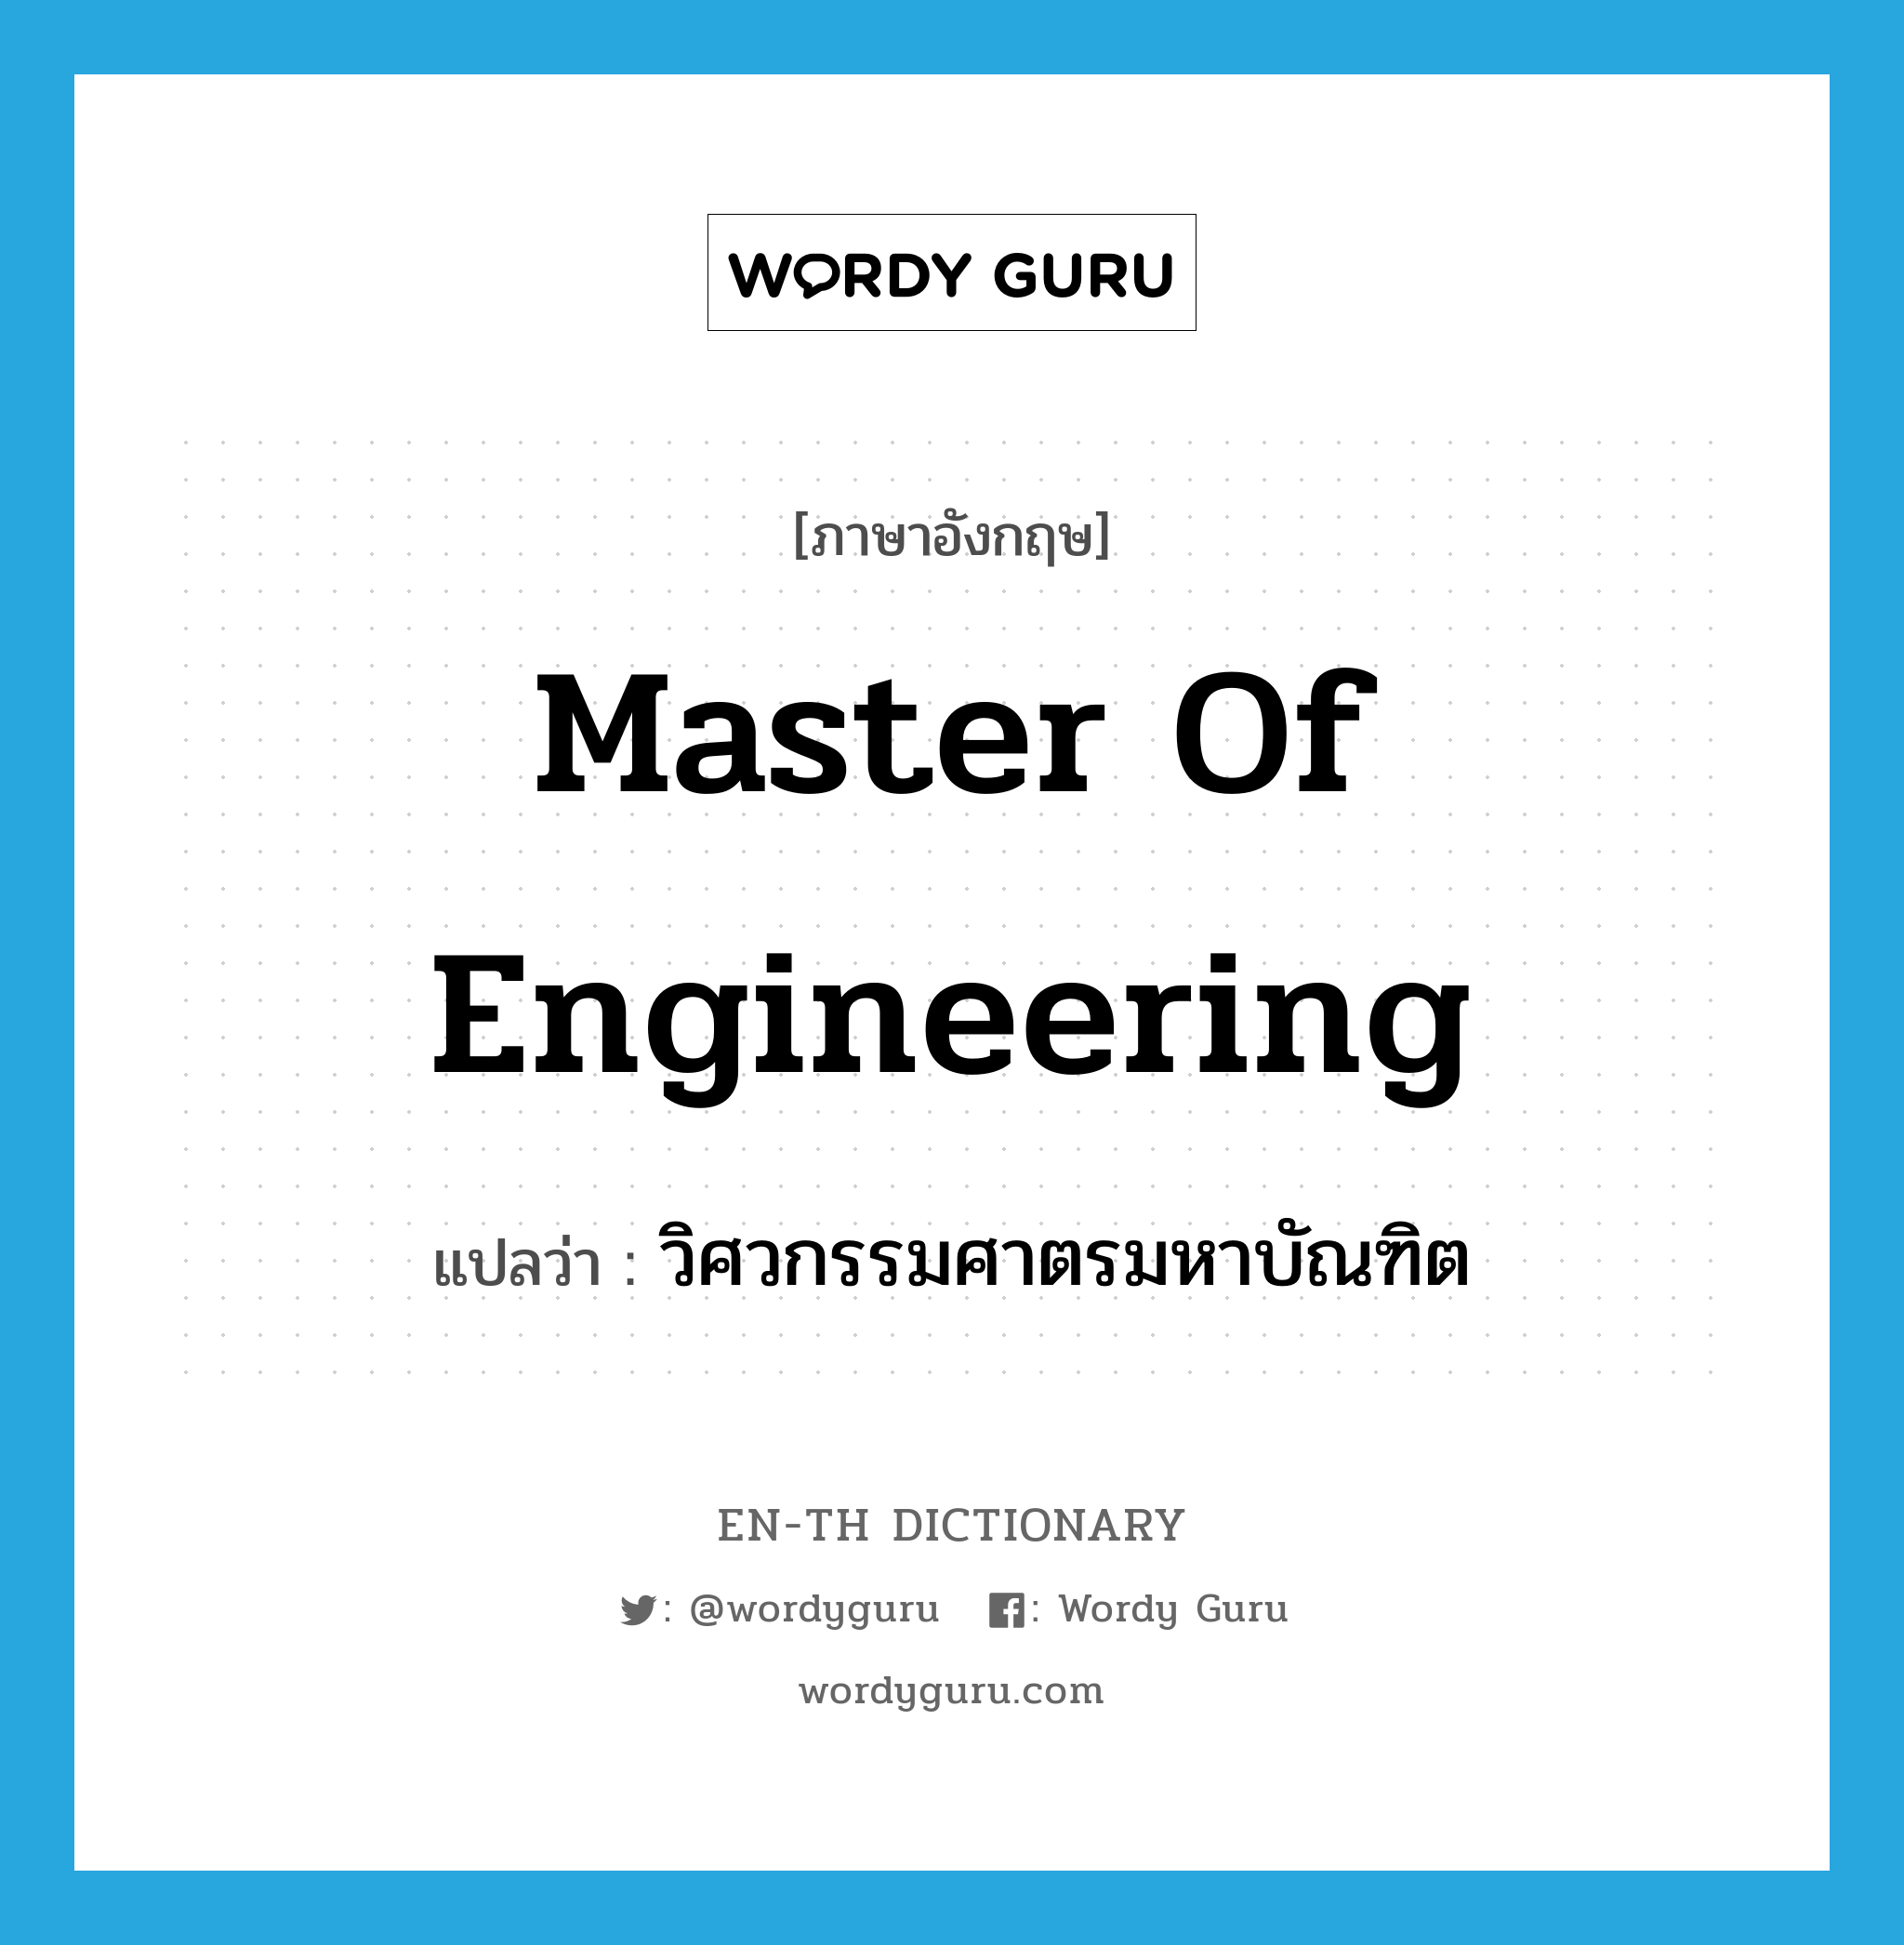 วิศวกรรมศาตรมหาบัณฑิต ภาษาอังกฤษ?, คำศัพท์ภาษาอังกฤษ วิศวกรรมศาตรมหาบัณฑิต แปลว่า Master of Engineering ประเภท N หมวด N